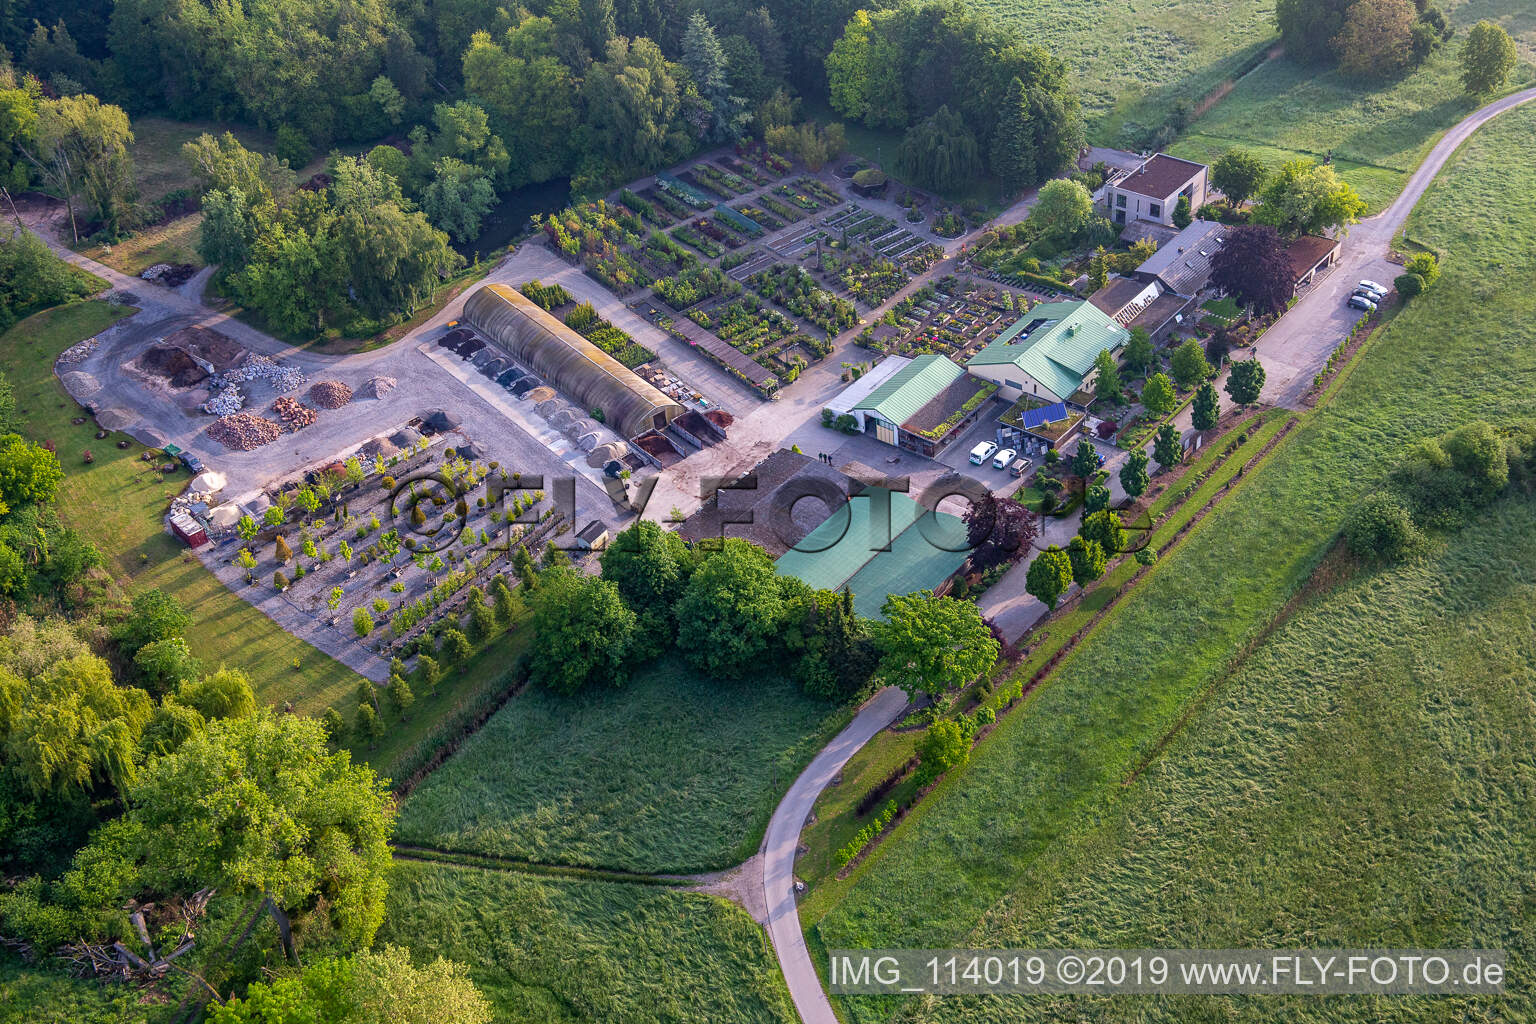 Bienwald Baumschule / Greentec in Berg im Bundesland Rheinland-Pfalz, Deutschland aus der Vogelperspektive